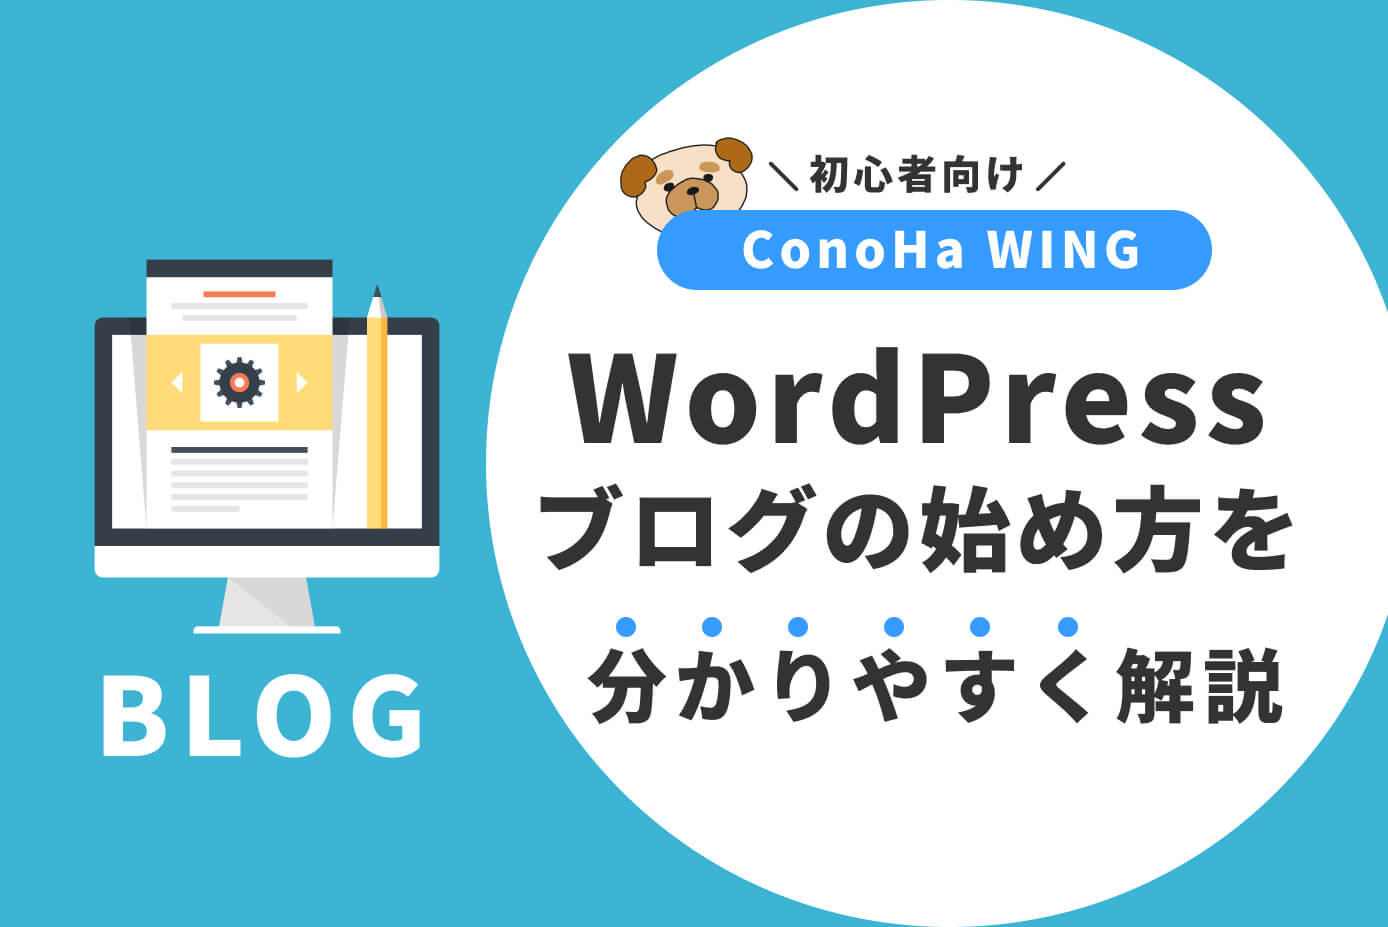 【ConoHa WING】WordPressブログの始め方を分かりやすく解説【初心者向け】